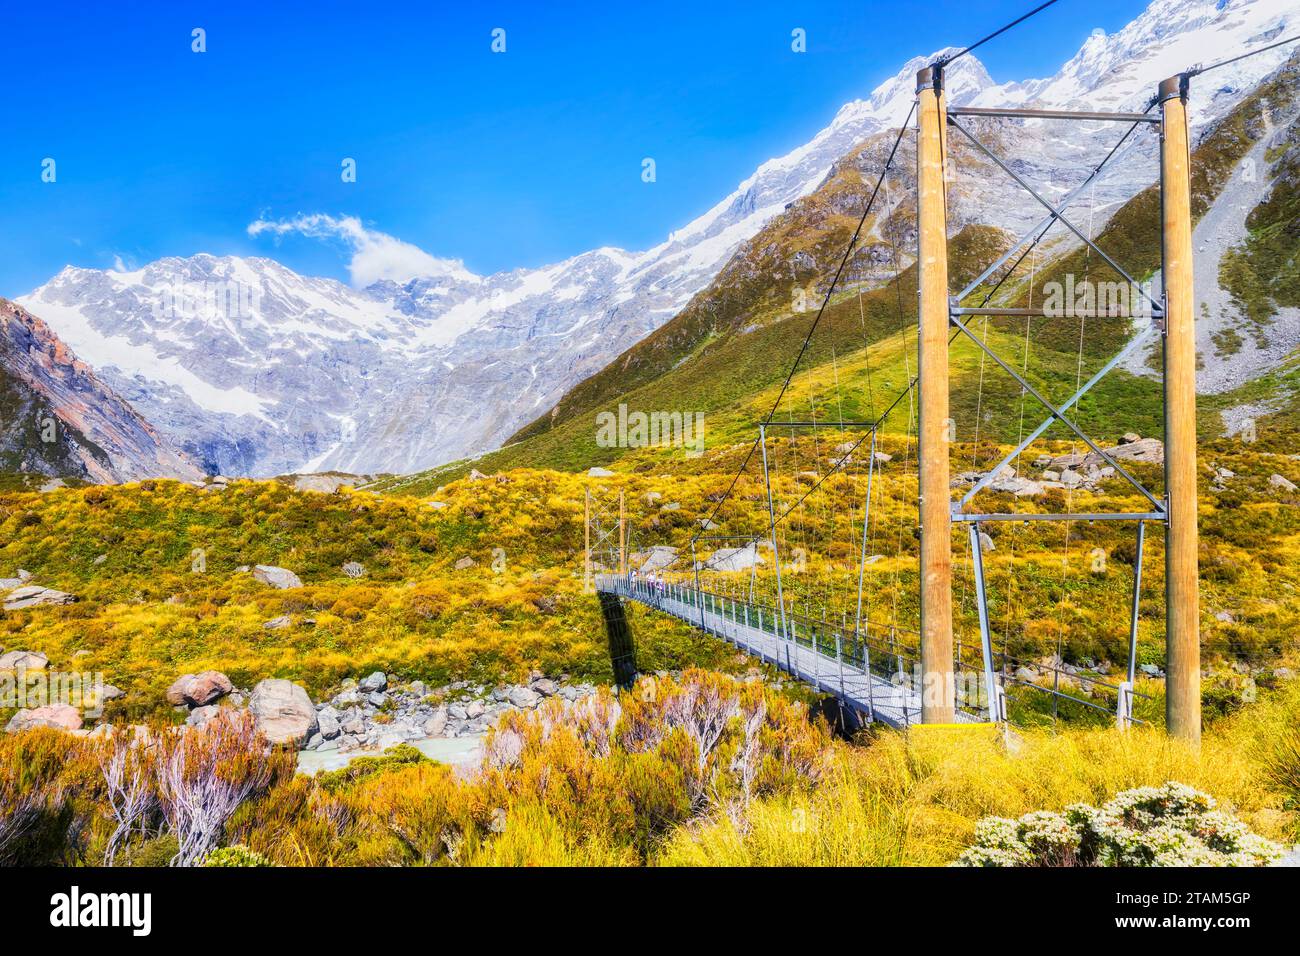 Passiamo un ponte pedonale nel sentiero escursionistico di Hooker, famosa valle turistica, al Monte Cook in nuova Zelanda. Foto Stock